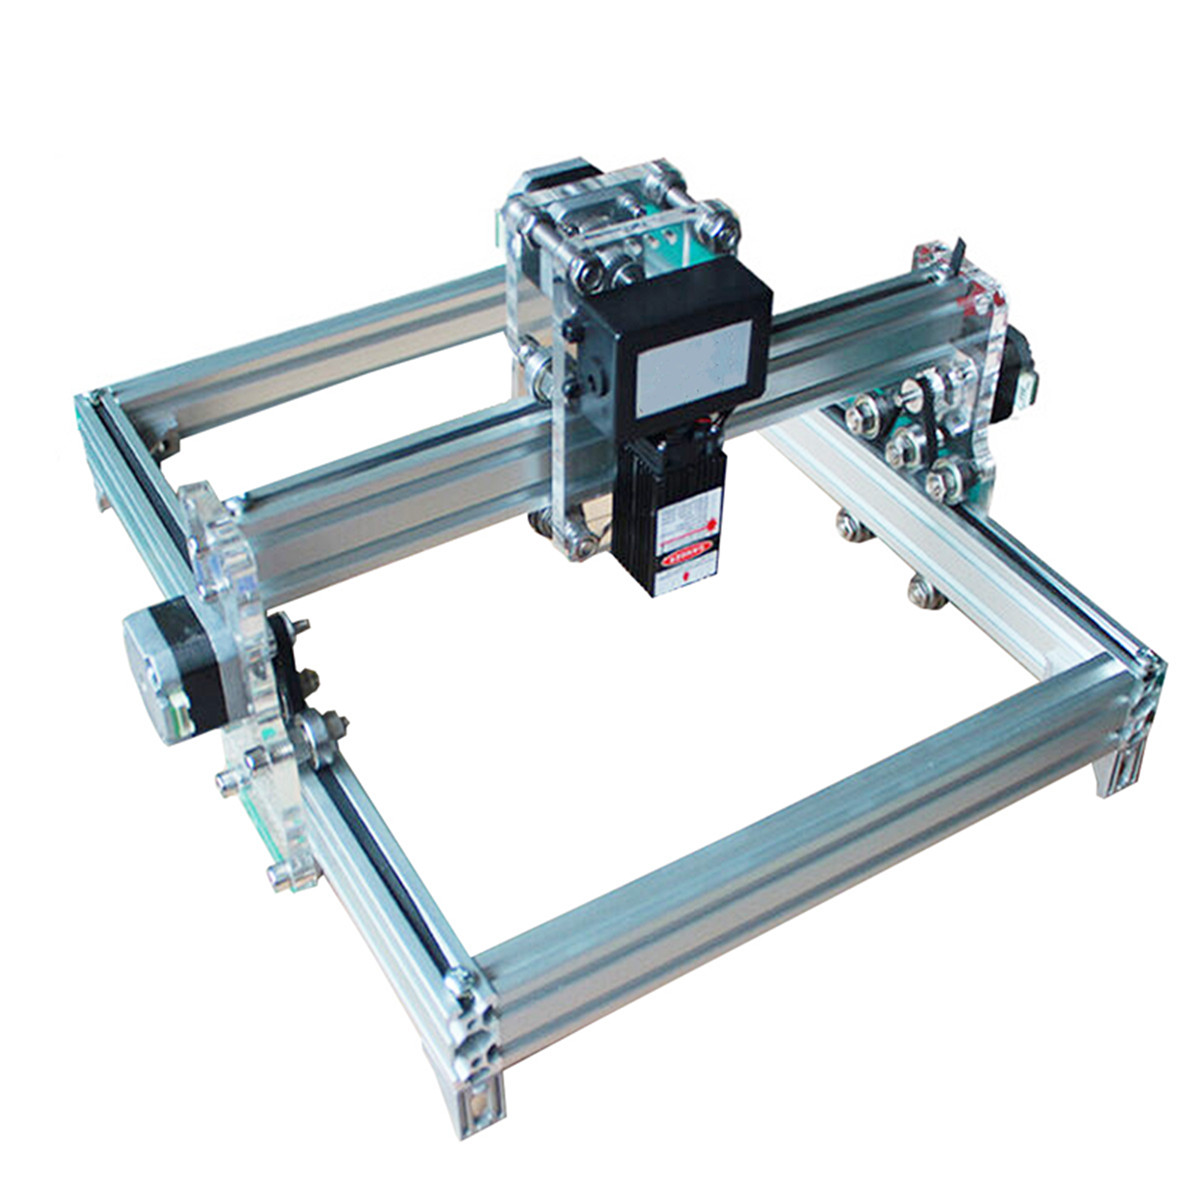 

32cm*23 cm DIY 500mW Laser Engraving Machine Laser Engraver Printer Carving Desktop CNC Kit